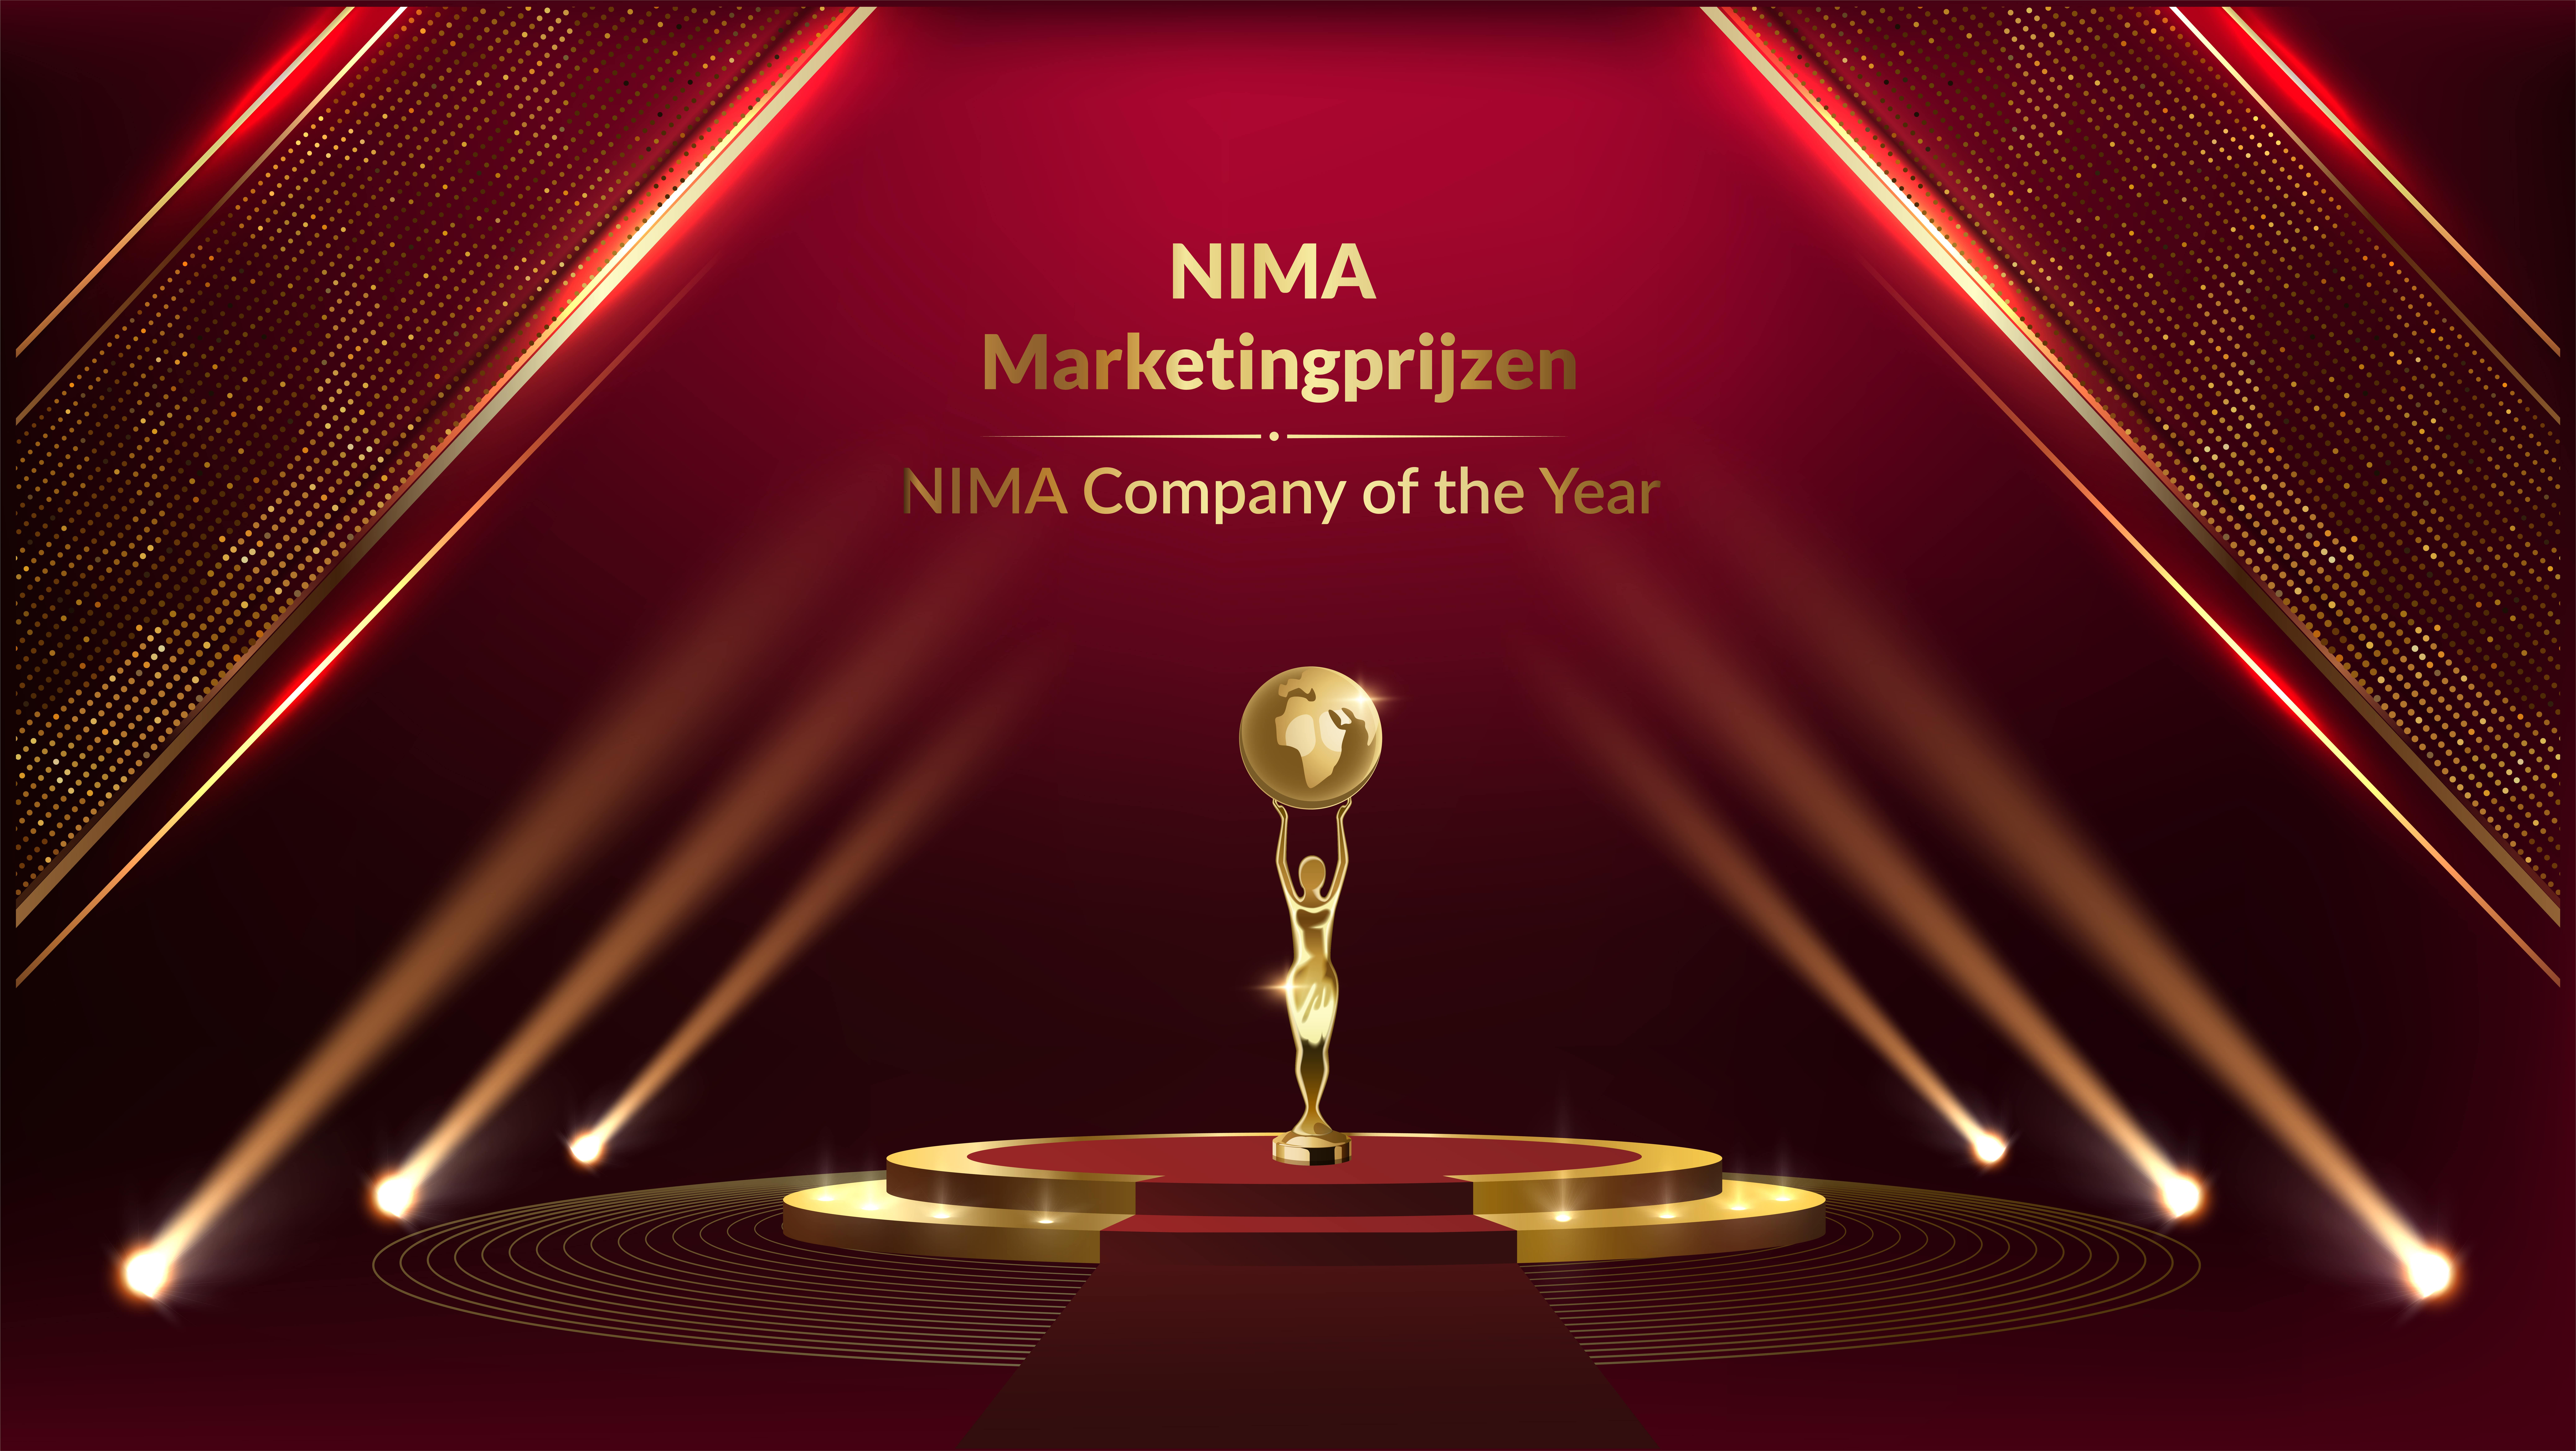 NIMA gaat door met marketingprijs: NIMA Company of the Year